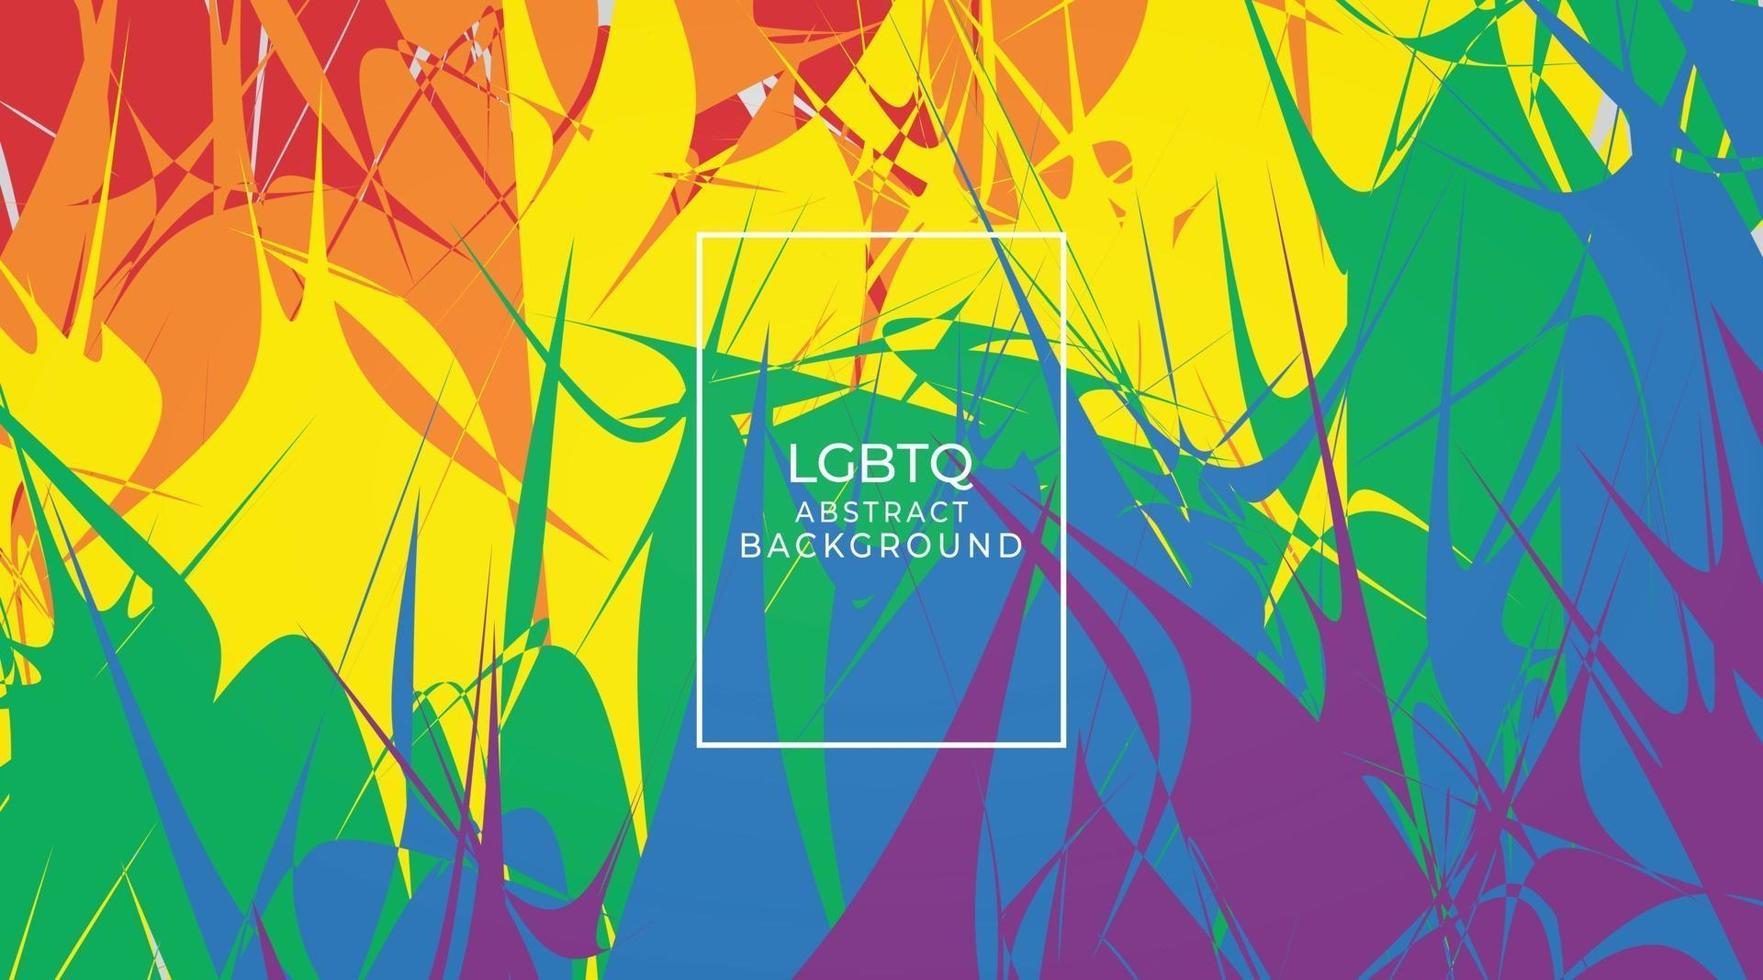 Banner de mes lgbtq con texto de tipografía en diseño de vector de fondo abstracto moderno arco iris colorido